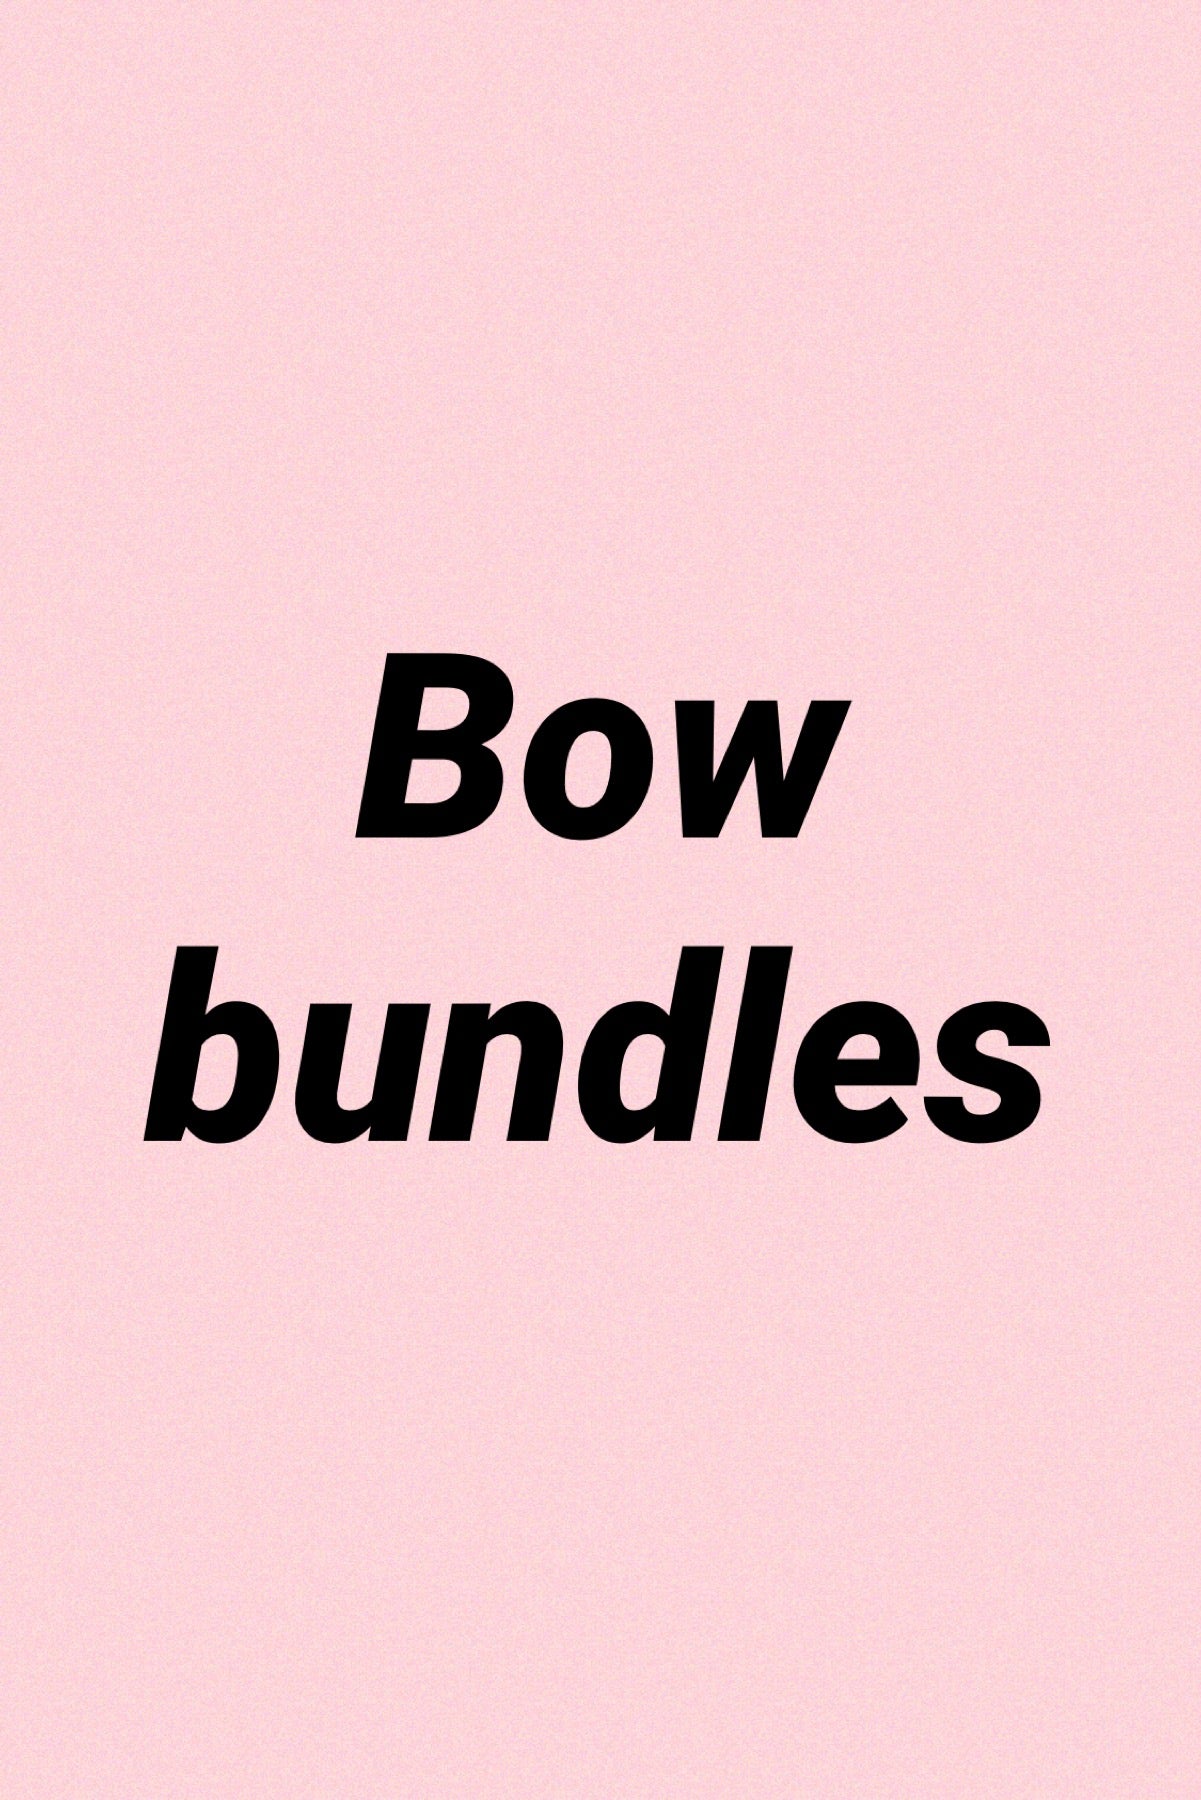 Bow bundles